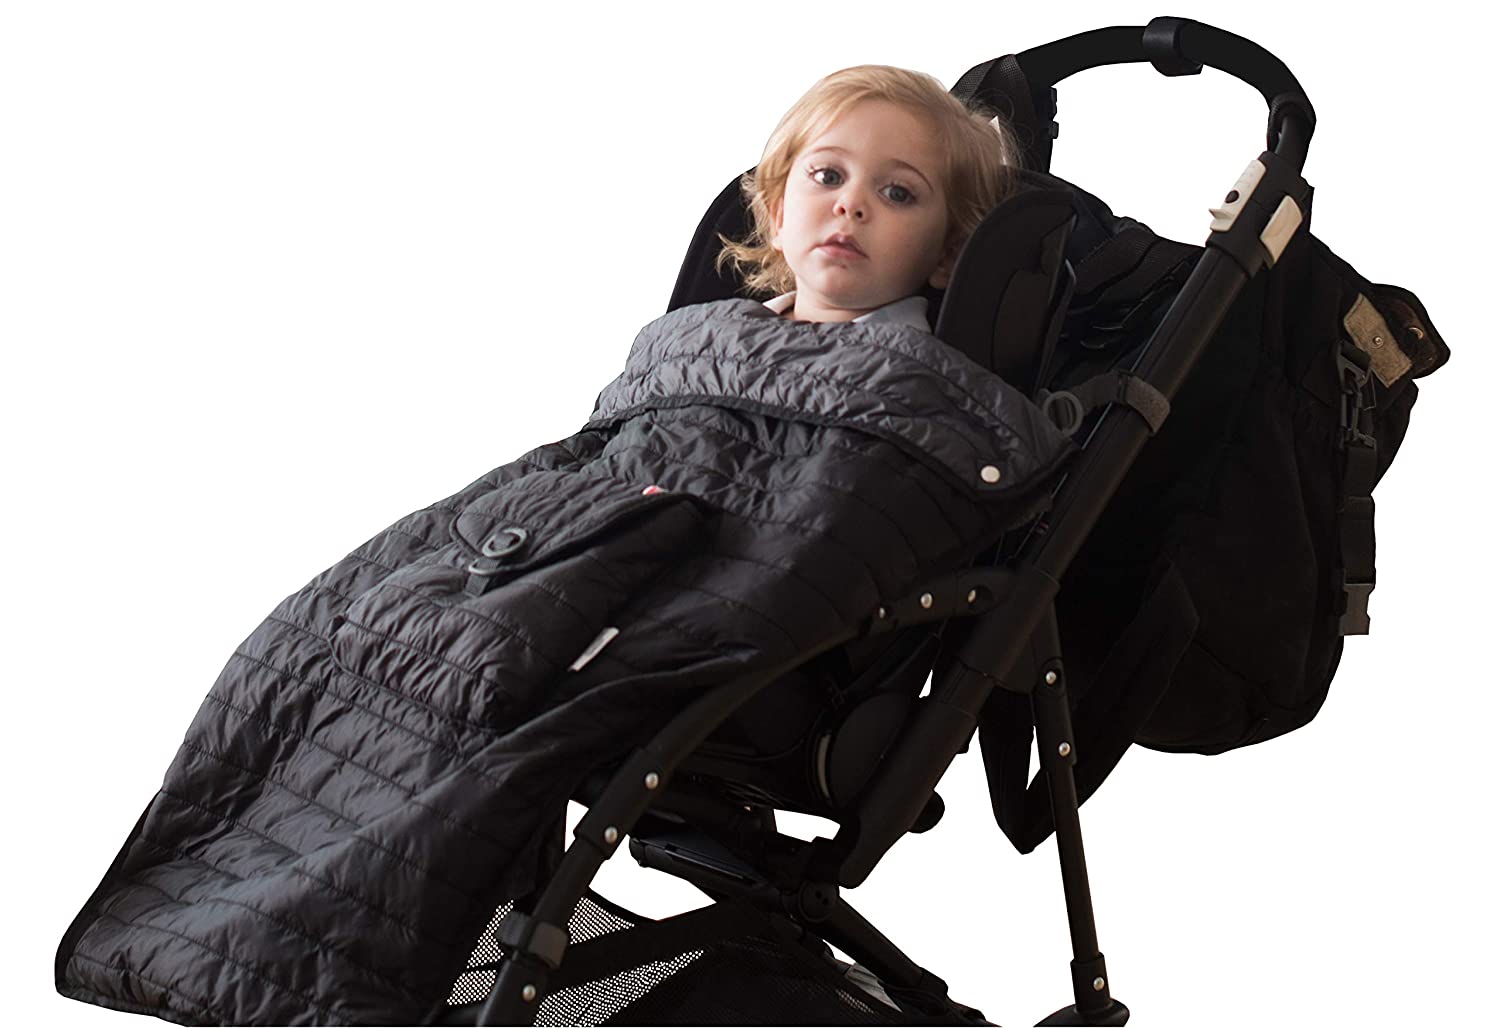 Baby Stroller Blanket